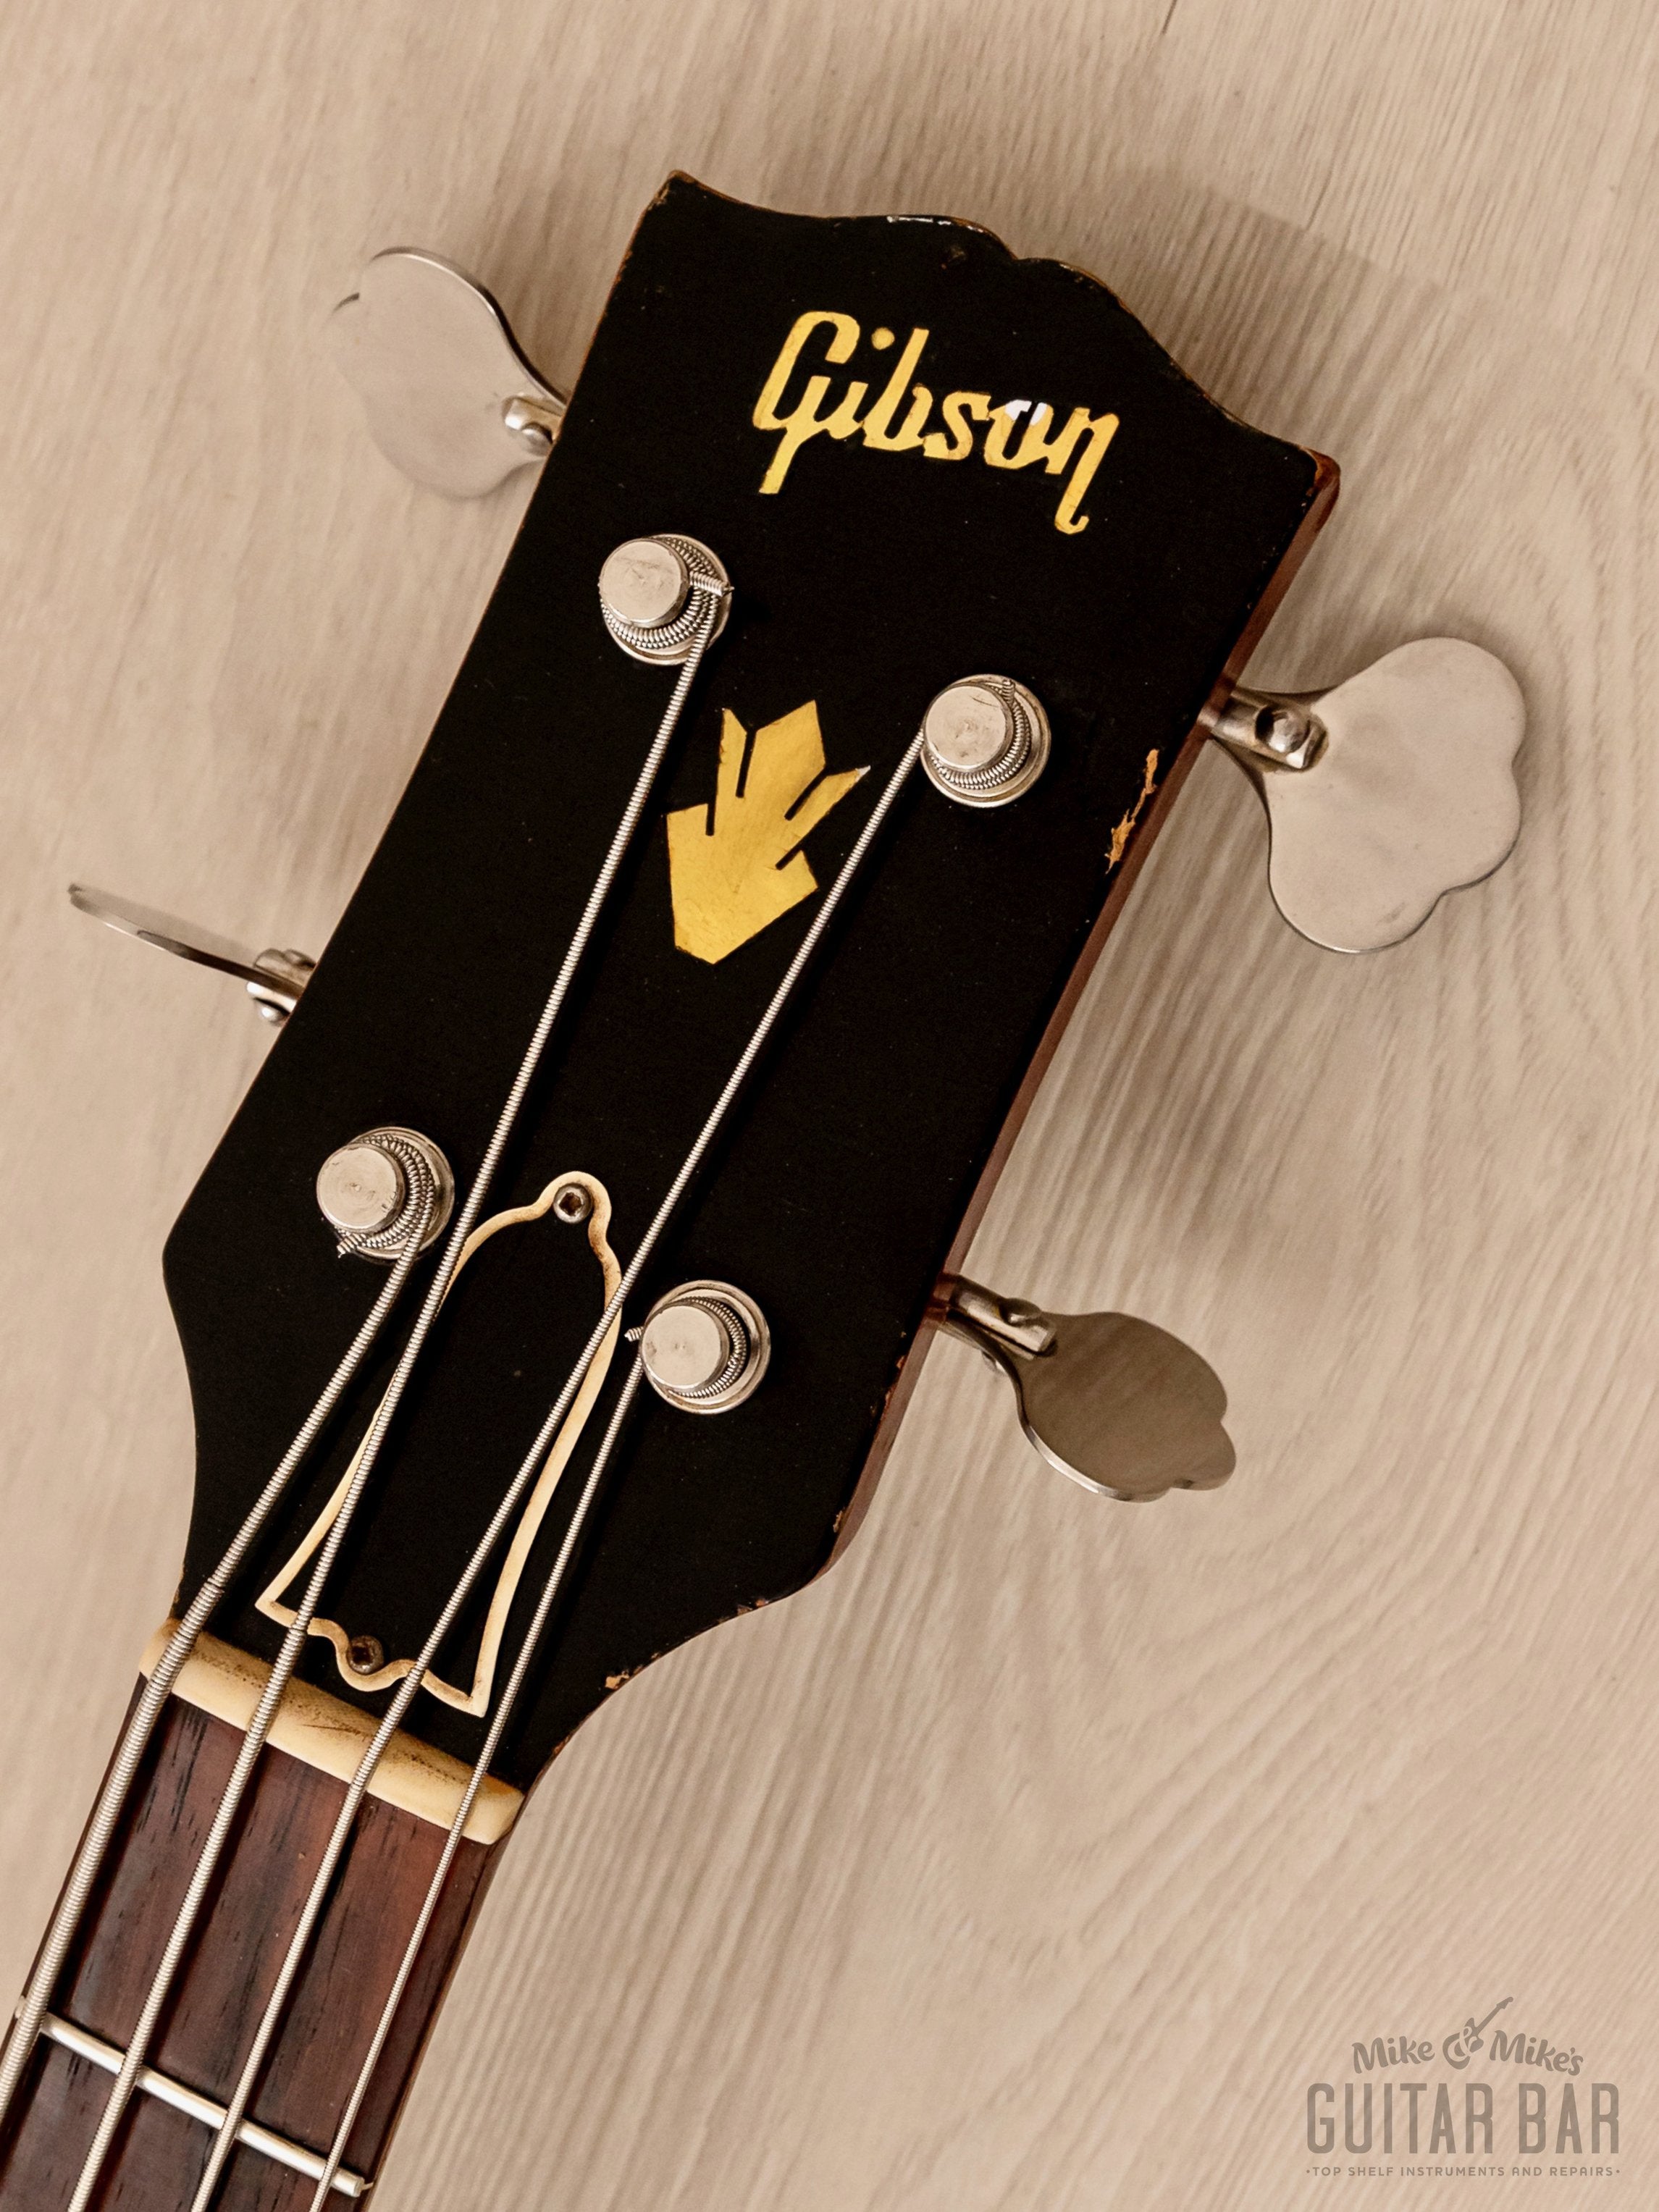 1962 Gibson EB-0 Vintage Short Scale SG Bass Cherry 100% Original w/ Mudbucker, Case